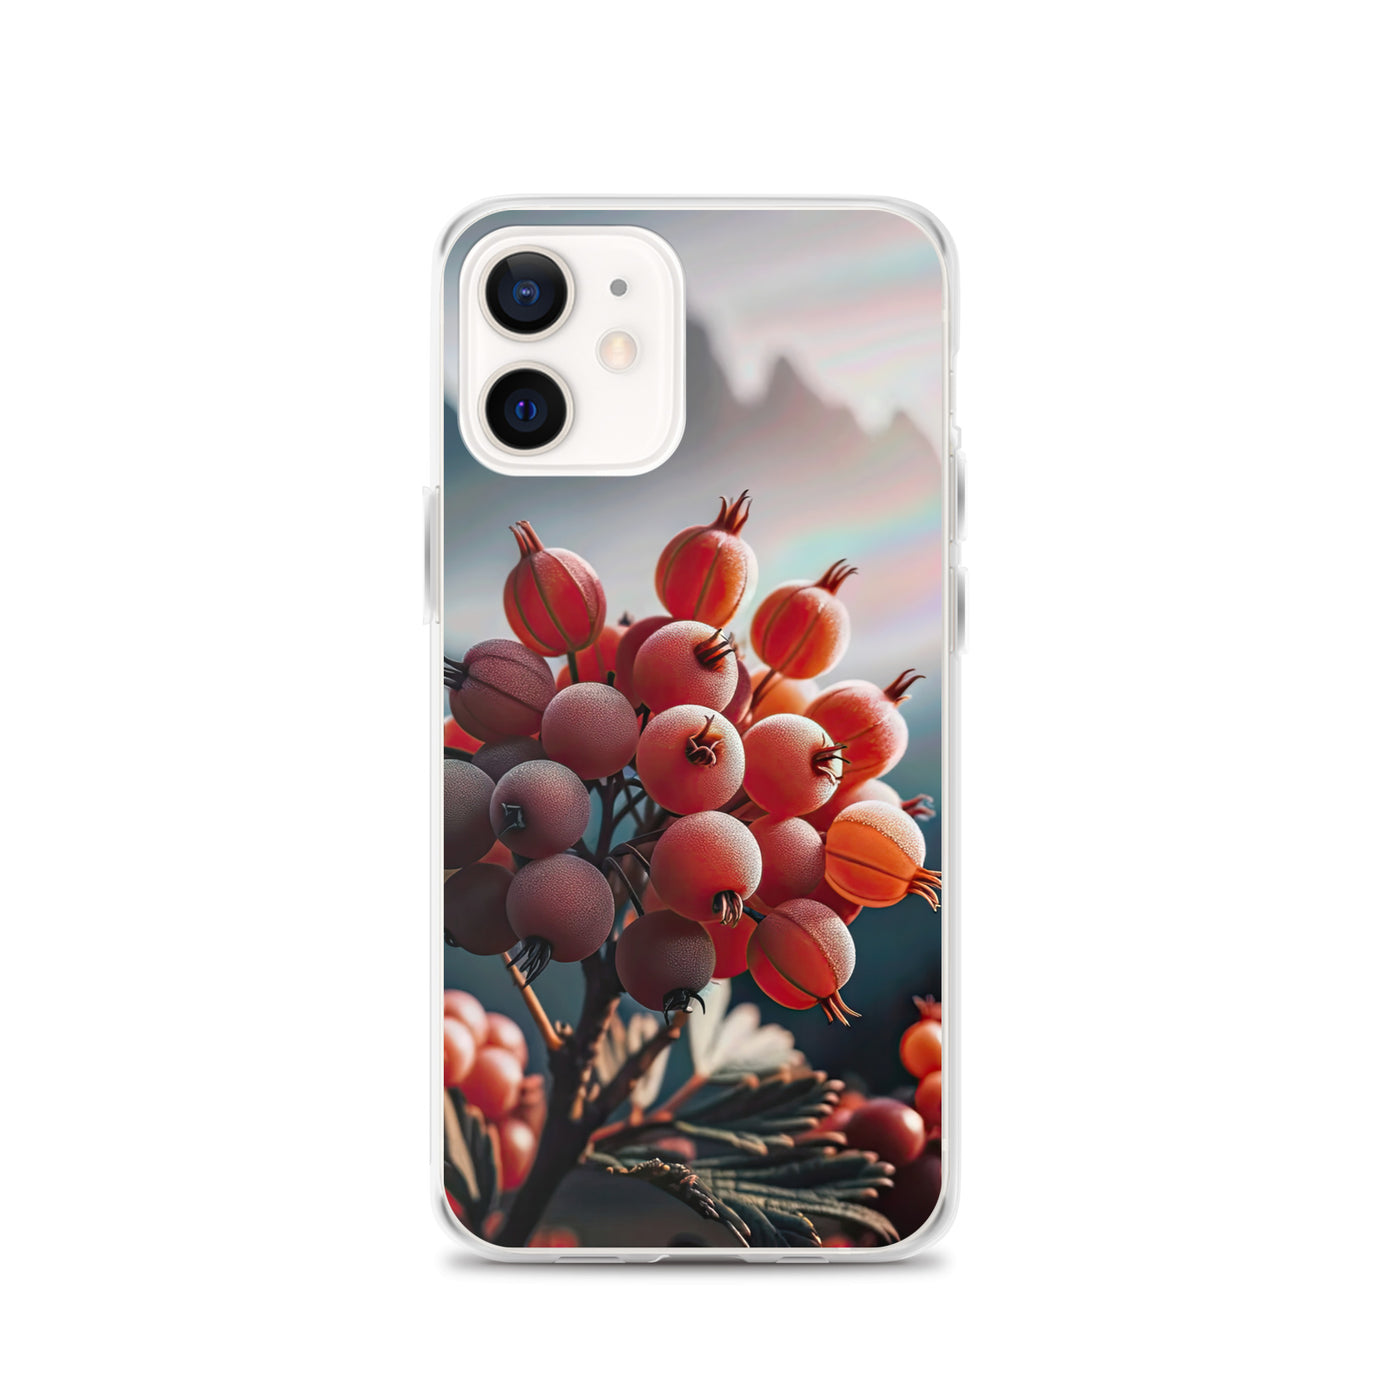 Foto einer Gruppe von Alpenbeeren mit kräftigen Farben und detaillierten Texturen - iPhone Schutzhülle (durchsichtig) berge xxx yyy zzz iPhone 12